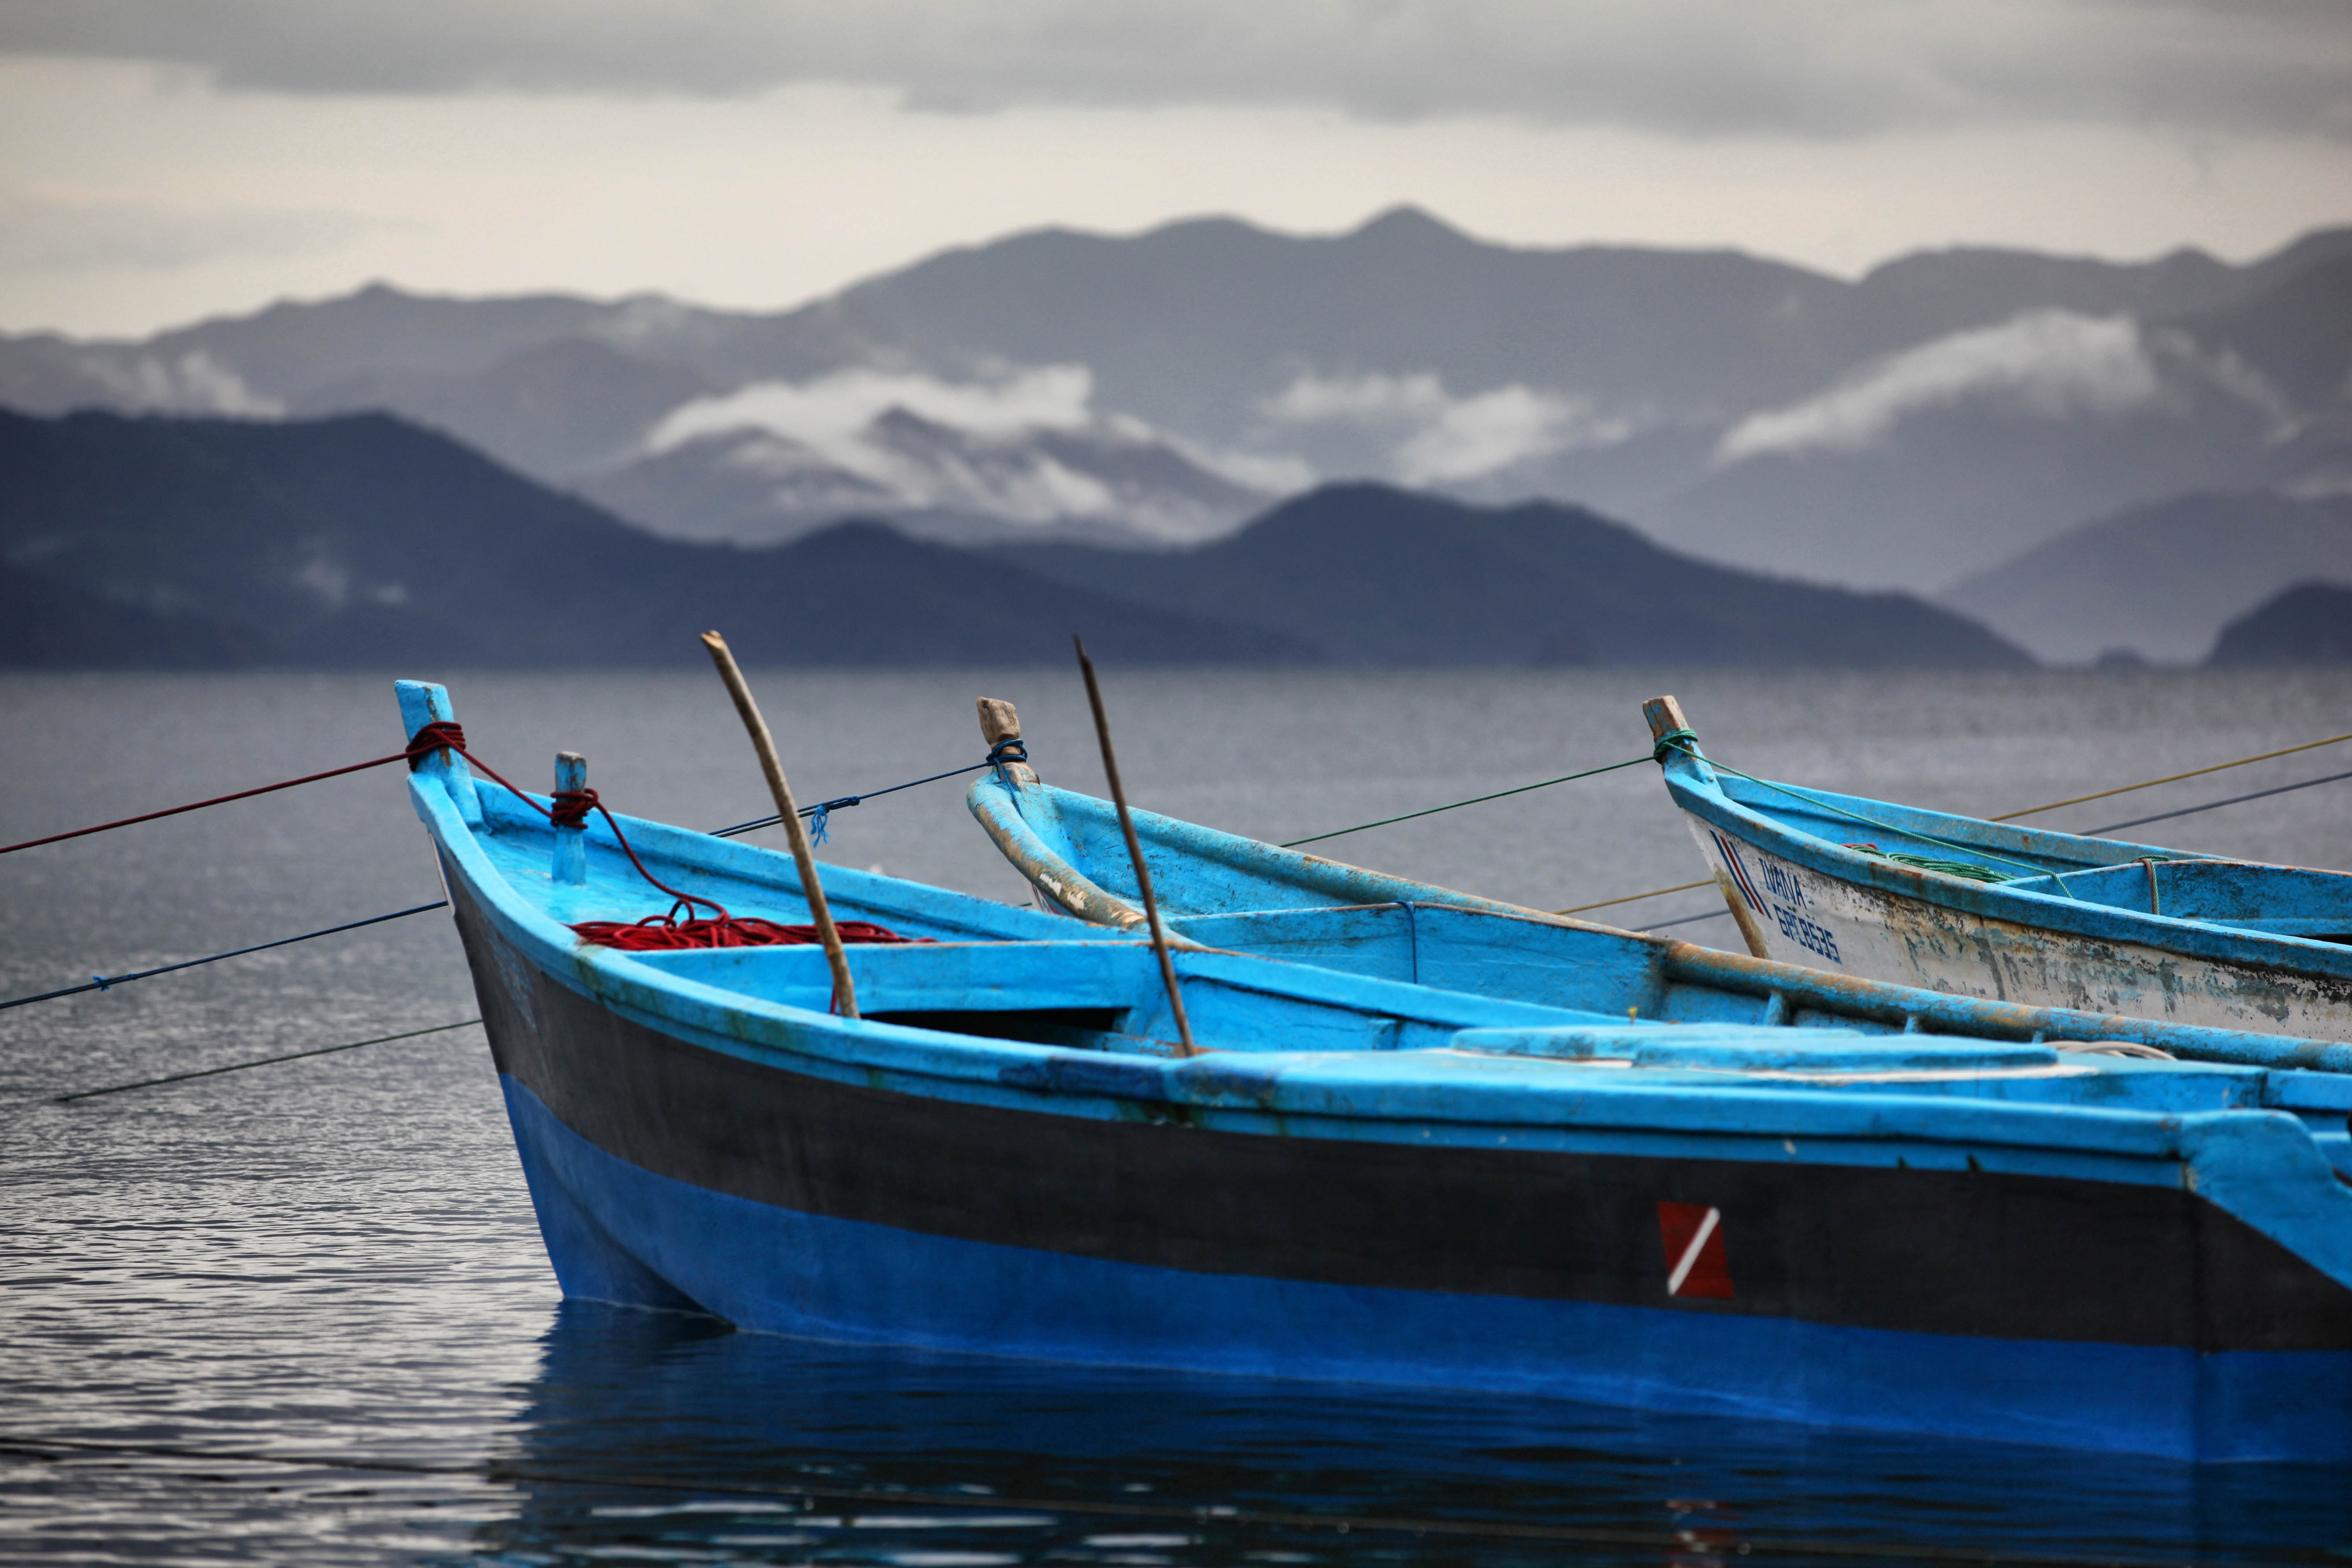 Blauw geschilderde boten op een rustig meer met mistige bergen op de achtergrond